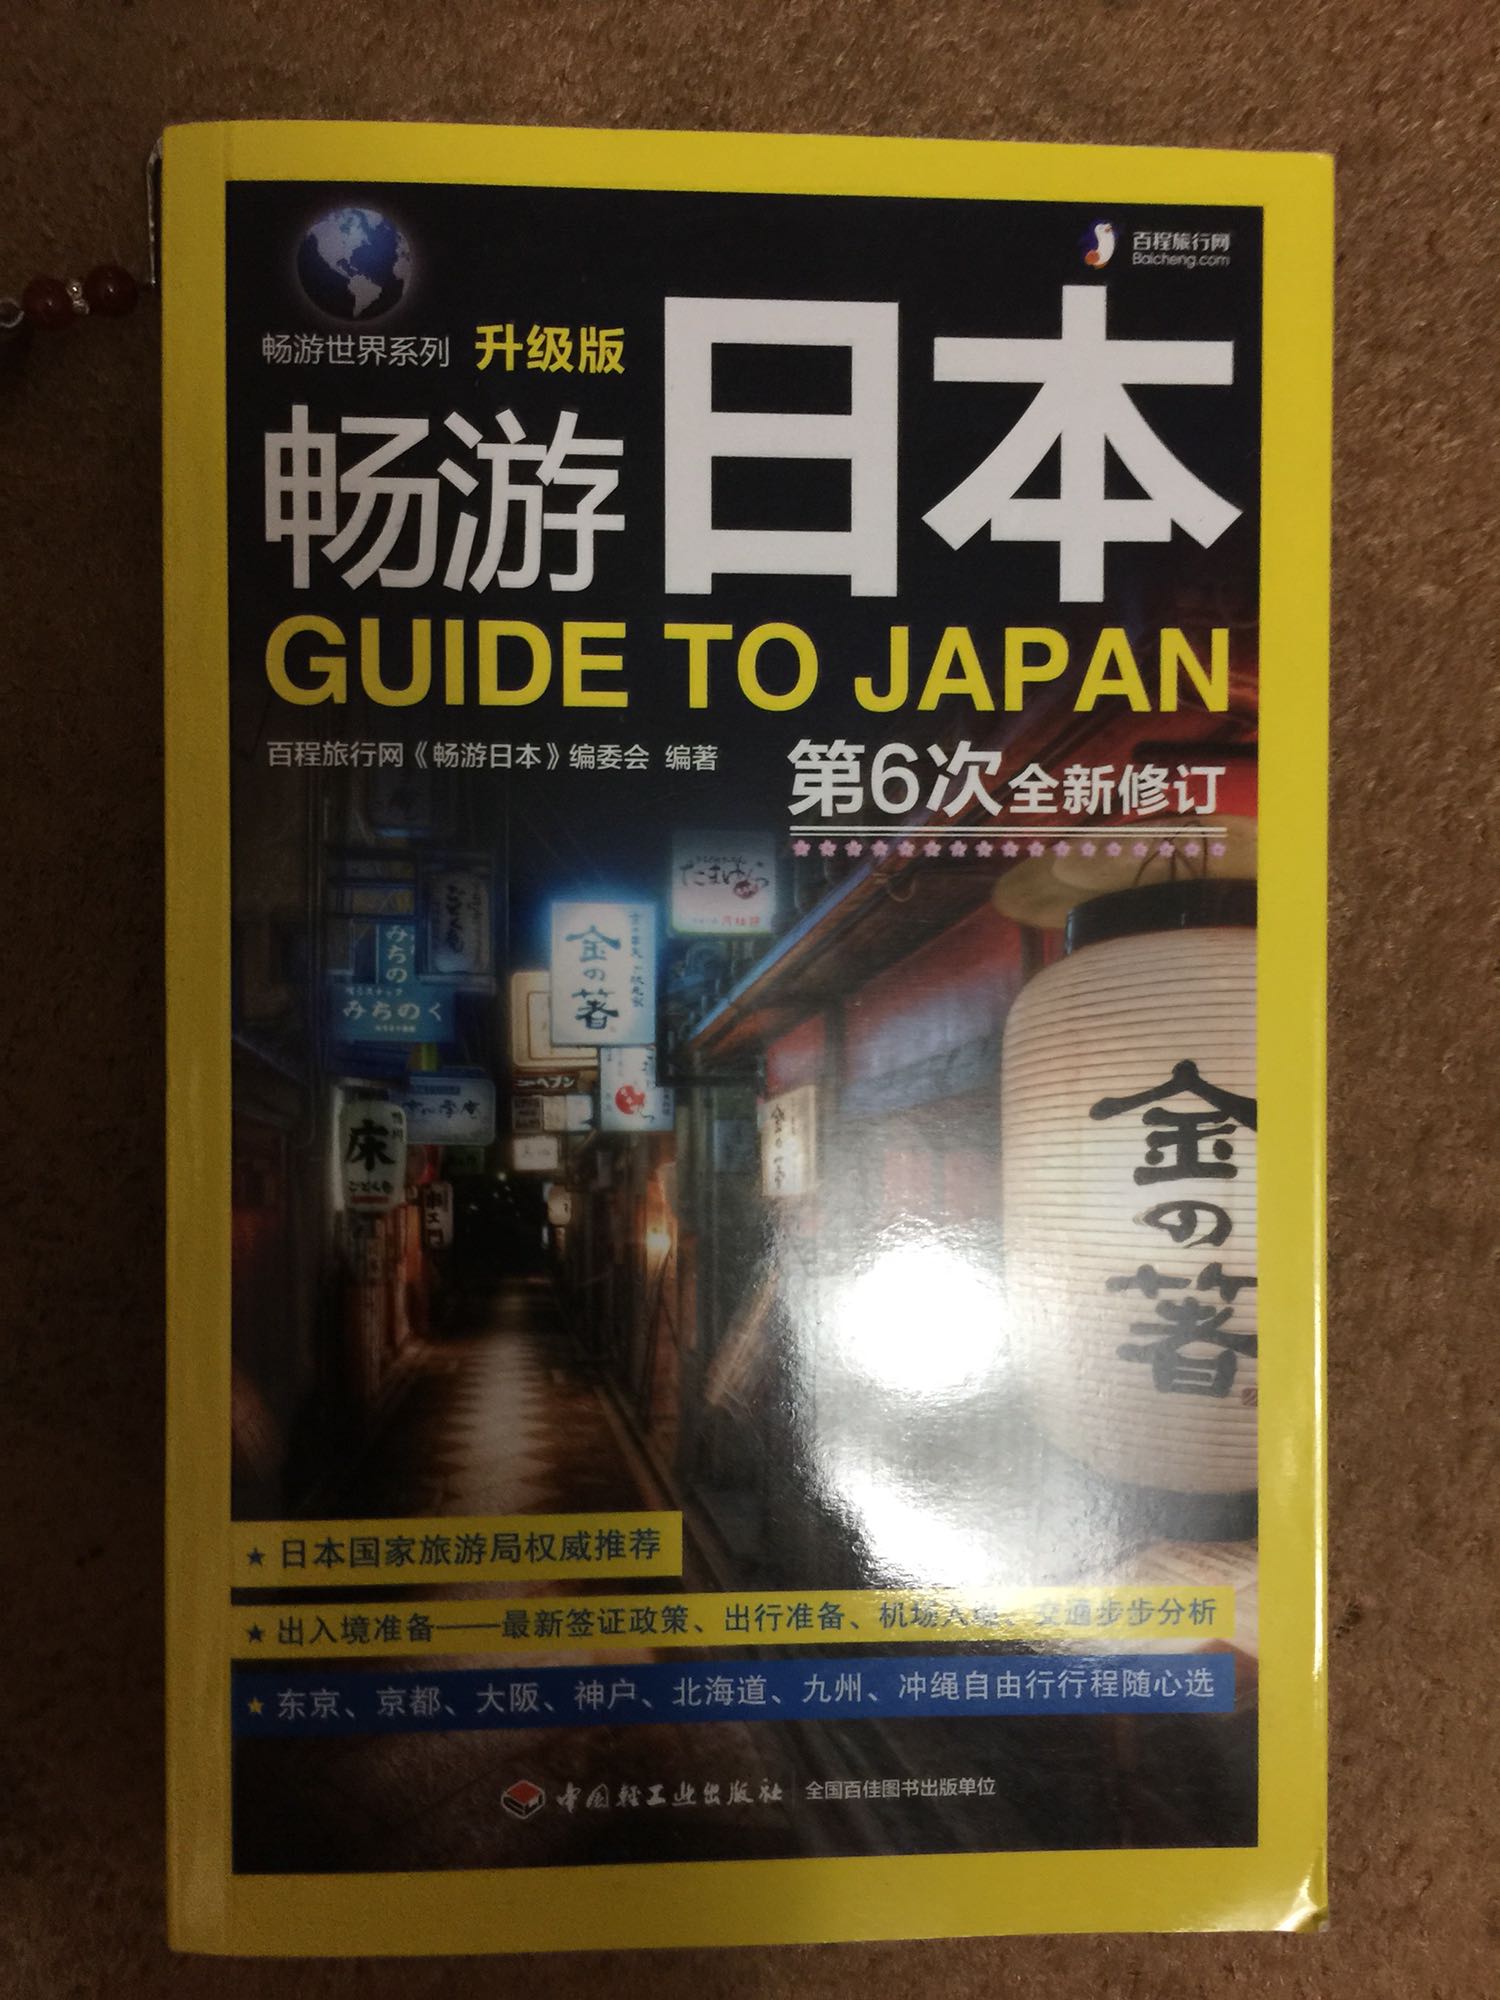 挺好的书，用于这次自由行旅游的。可惜北海道的景点里没有阿寒湖，有点可惜。